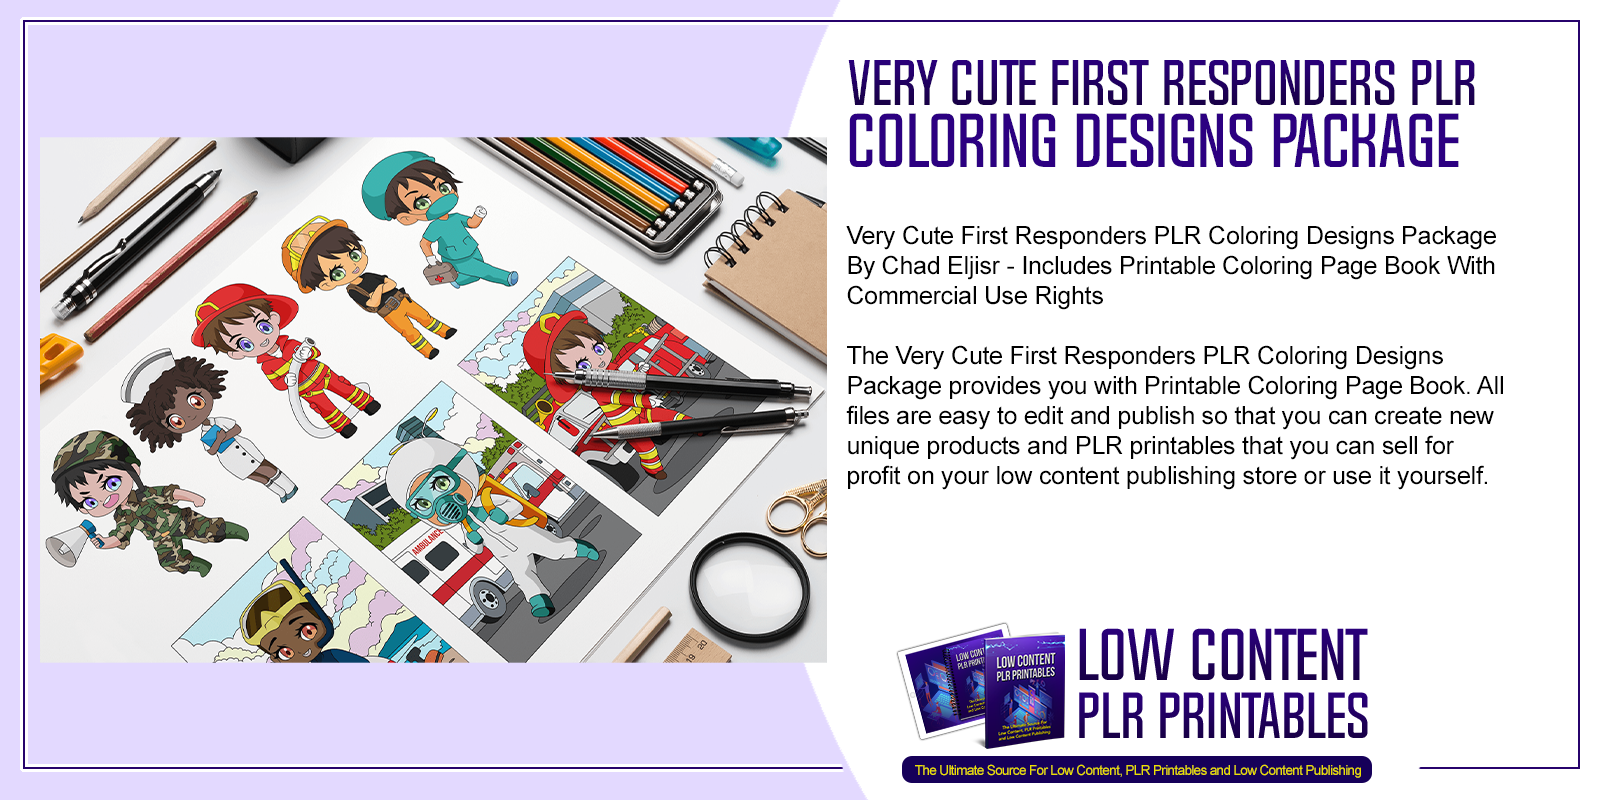 Very Cute First Responders PLR Coloring Designs Package 1